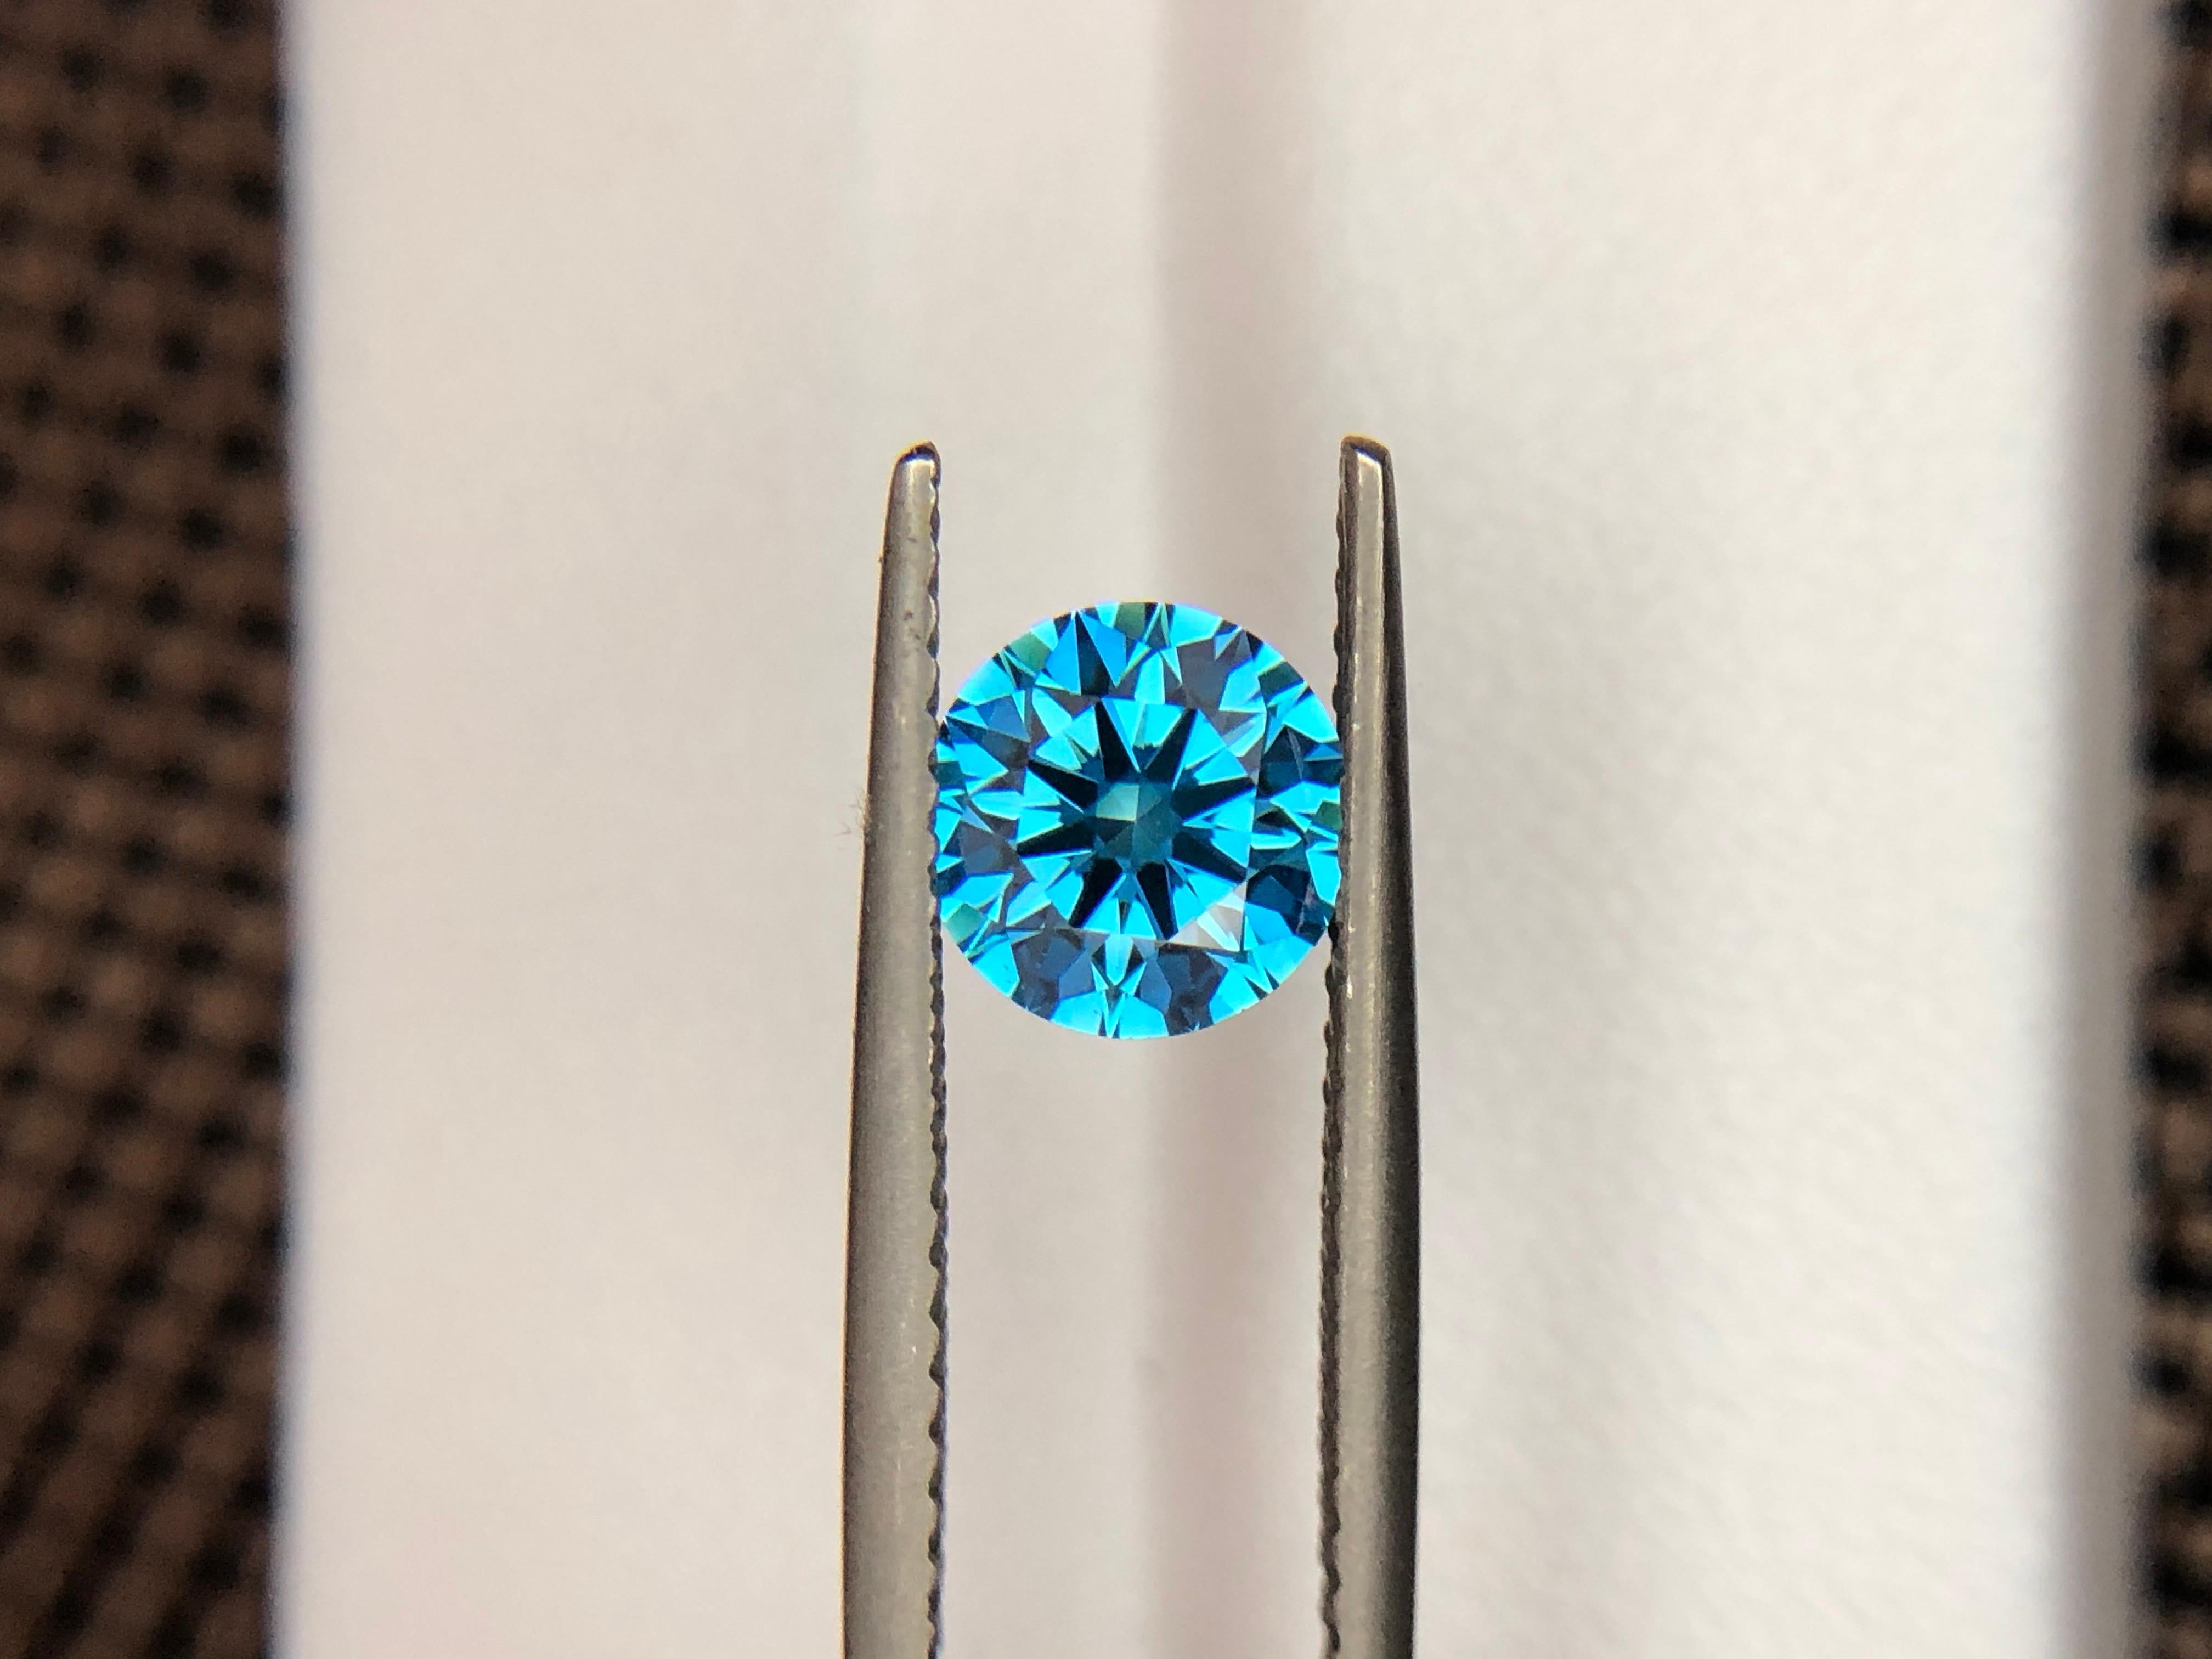 Wir präsentieren unseren exquisiten blauen Diamanten HPHT Round, 1,03 ct. Tauchen Sie ein in die fesselnde Anziehungskraft dieses seltenen Schmuckstücks, das mit größter Sorgfalt und Perfektion gefertigt wurde. Erweitern Sie Ihre Collection'S mit